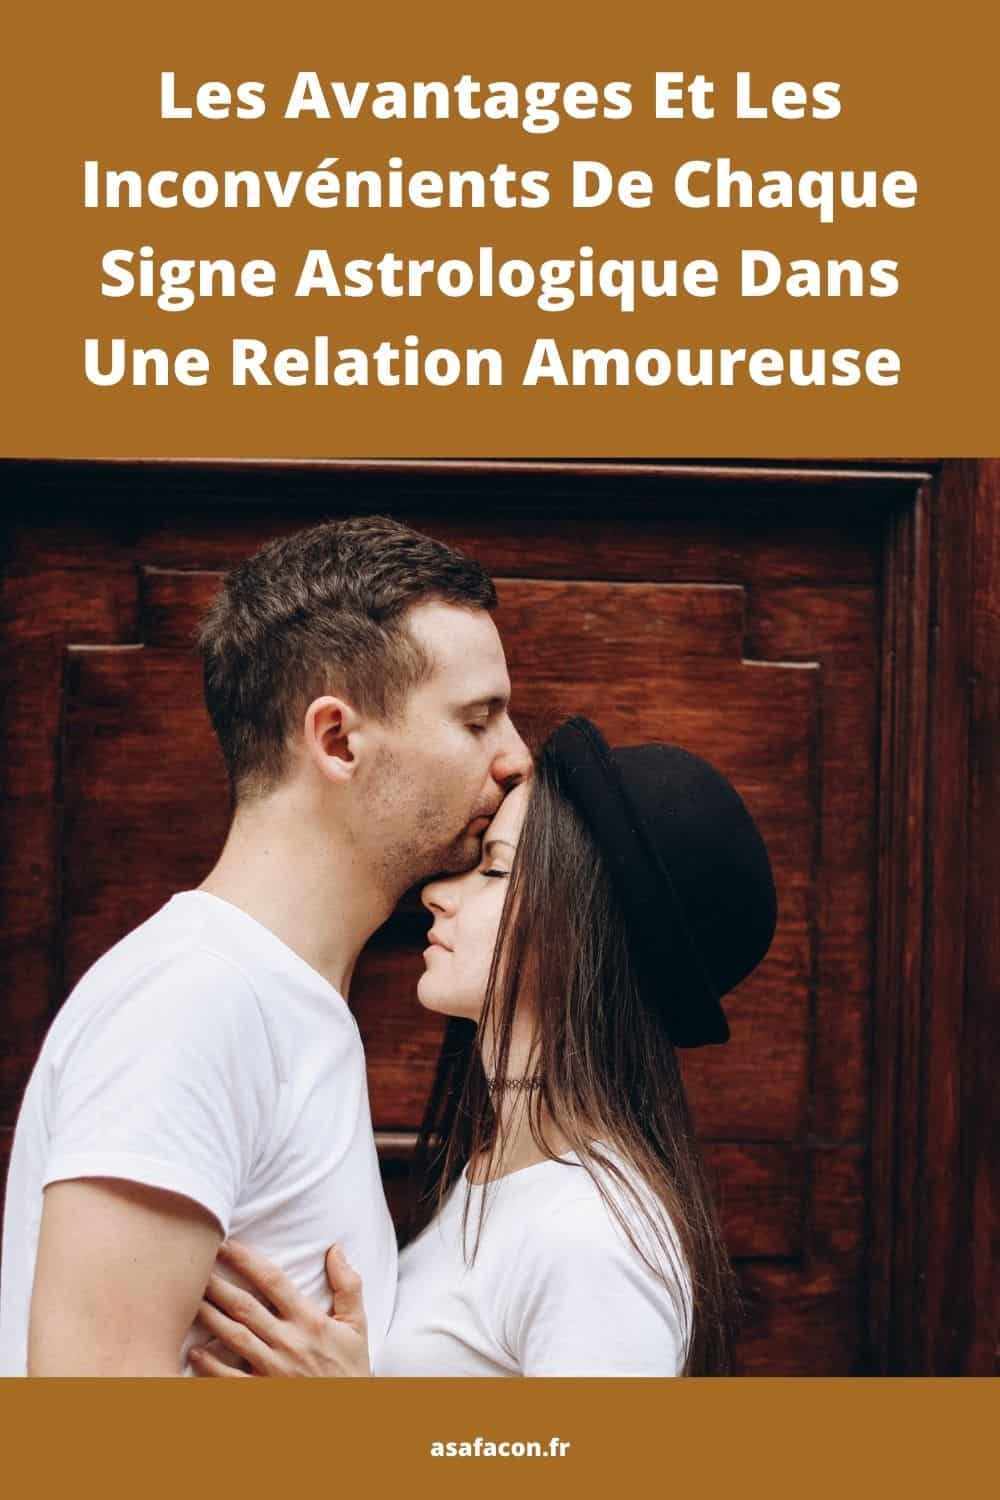 Les Avantages Et Les Inconvénients De Chaque Signe Astrologique Dans Une Relation Amoureuse